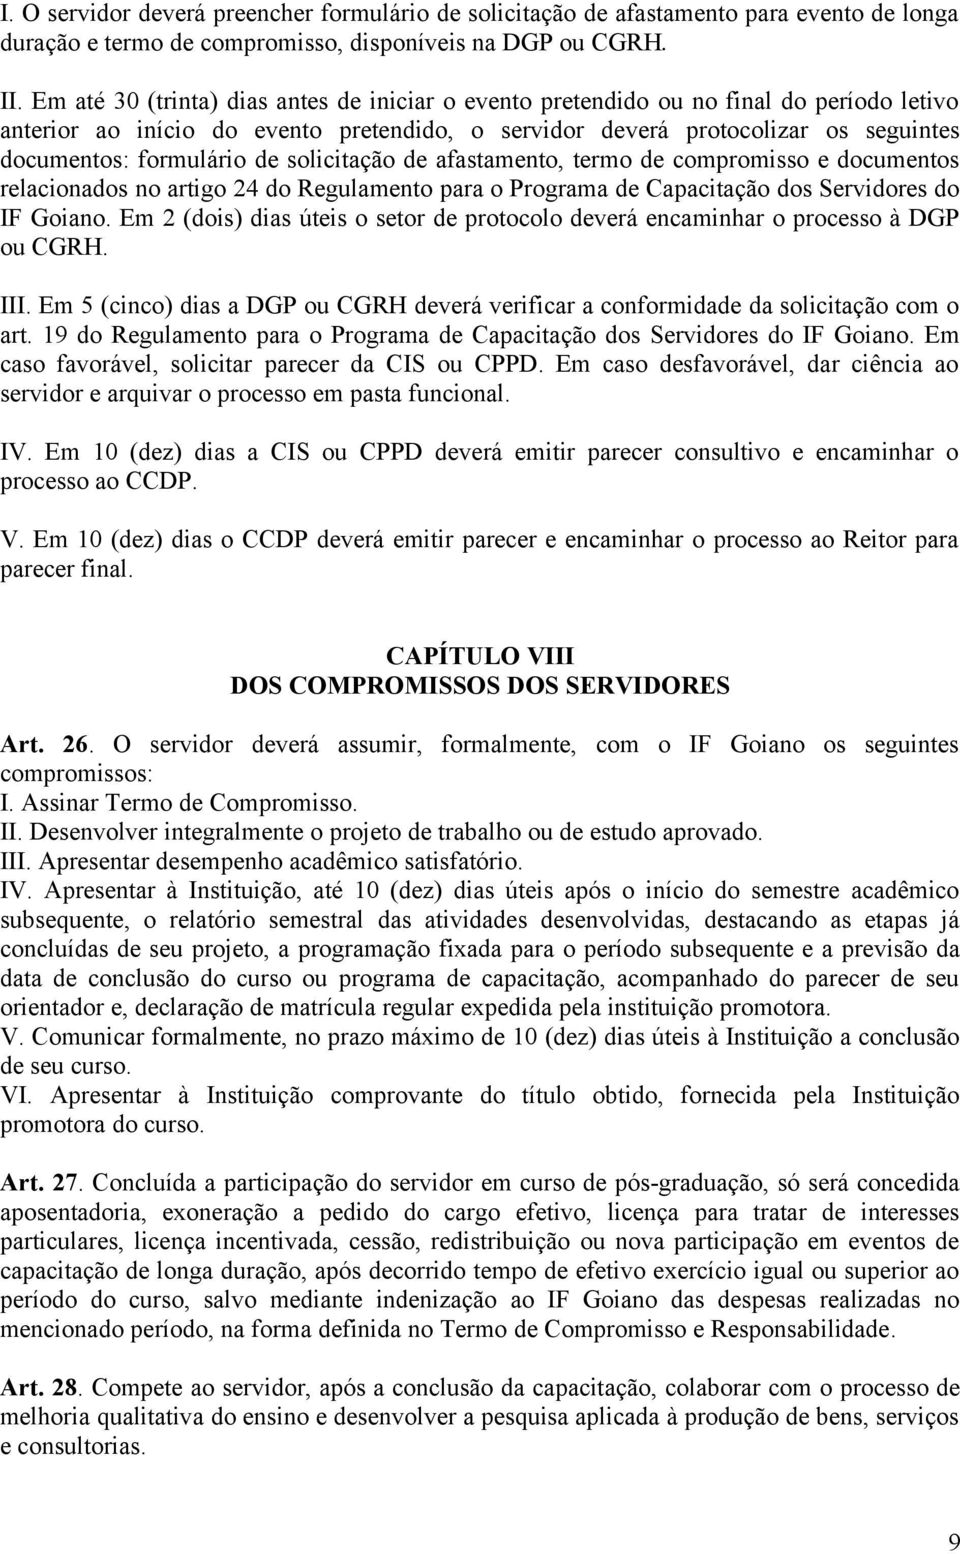 de solicitação de afastamento, termo de compromisso e documentos relacionados no artigo 24 do Regulamento para o Programa de Capacitação dos Servidores do IF Goiano.